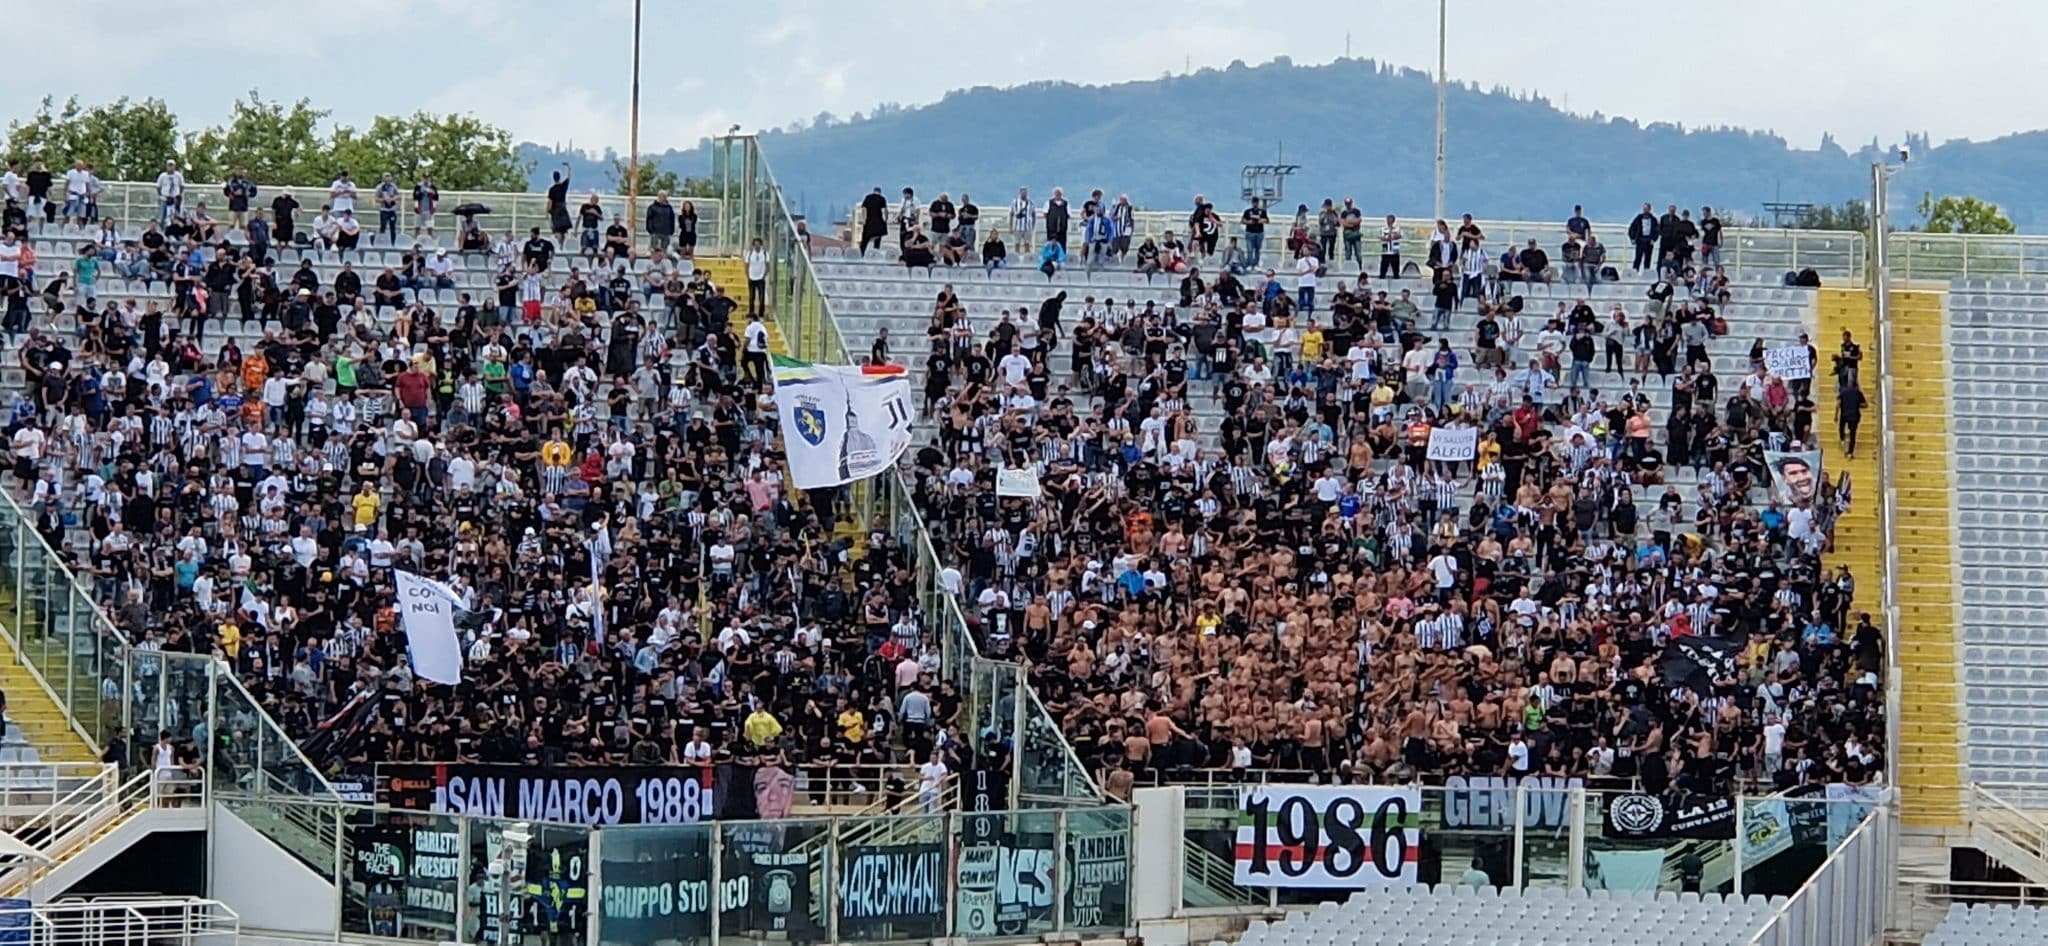 Les supporters de la Juventus se sont déchaînés en premier : « Florence en flammes » puis : « Fiorentino morceau de m*** »